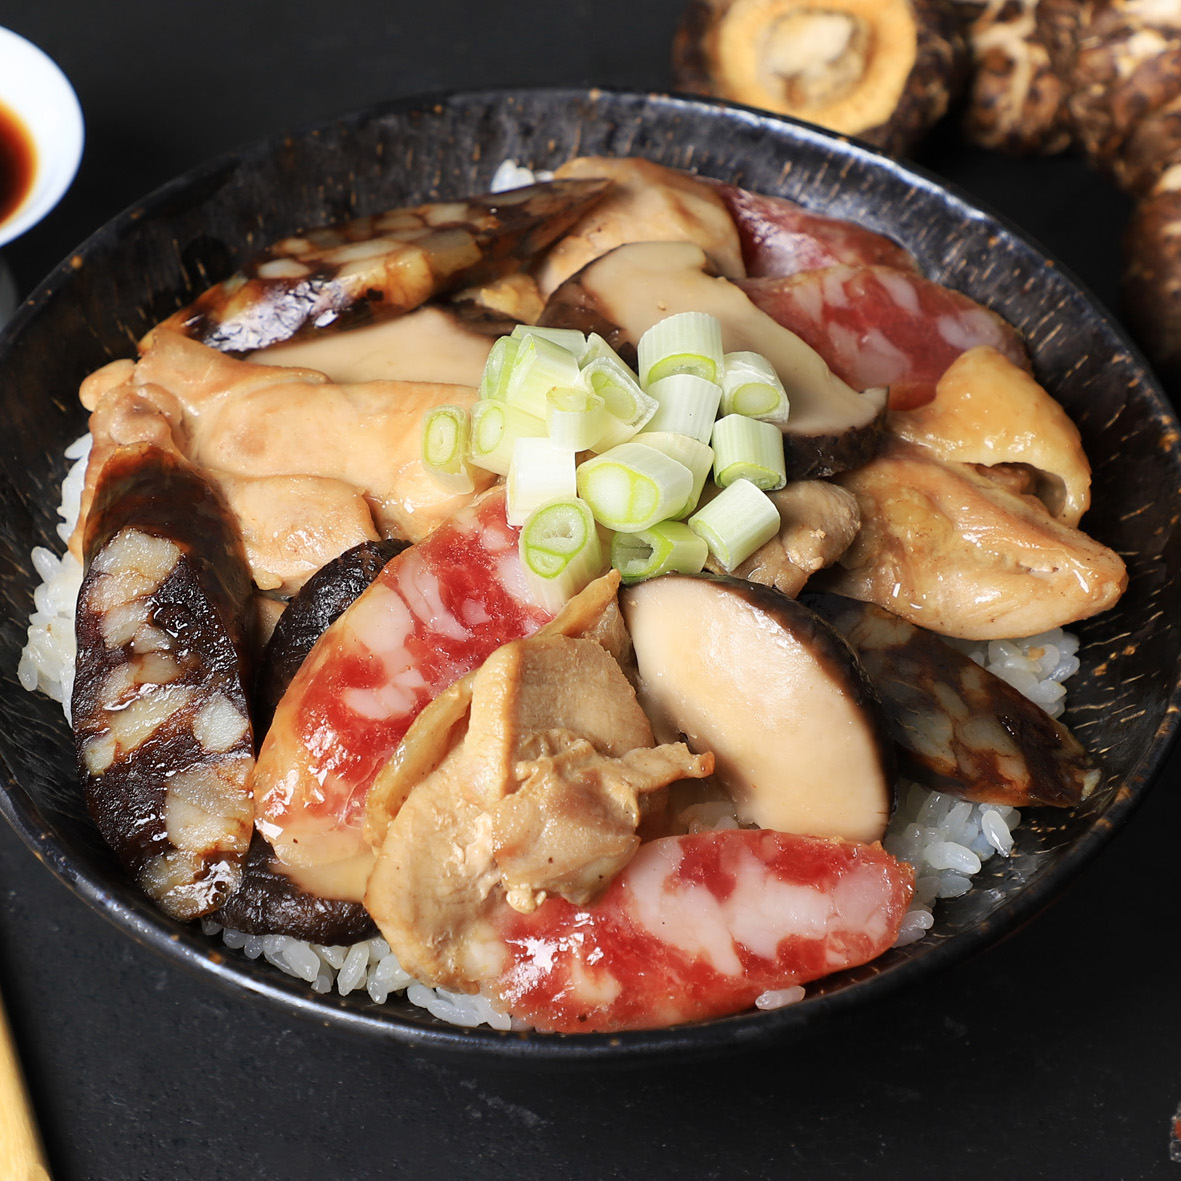 臘腸香菇蒸雞盅仔飯